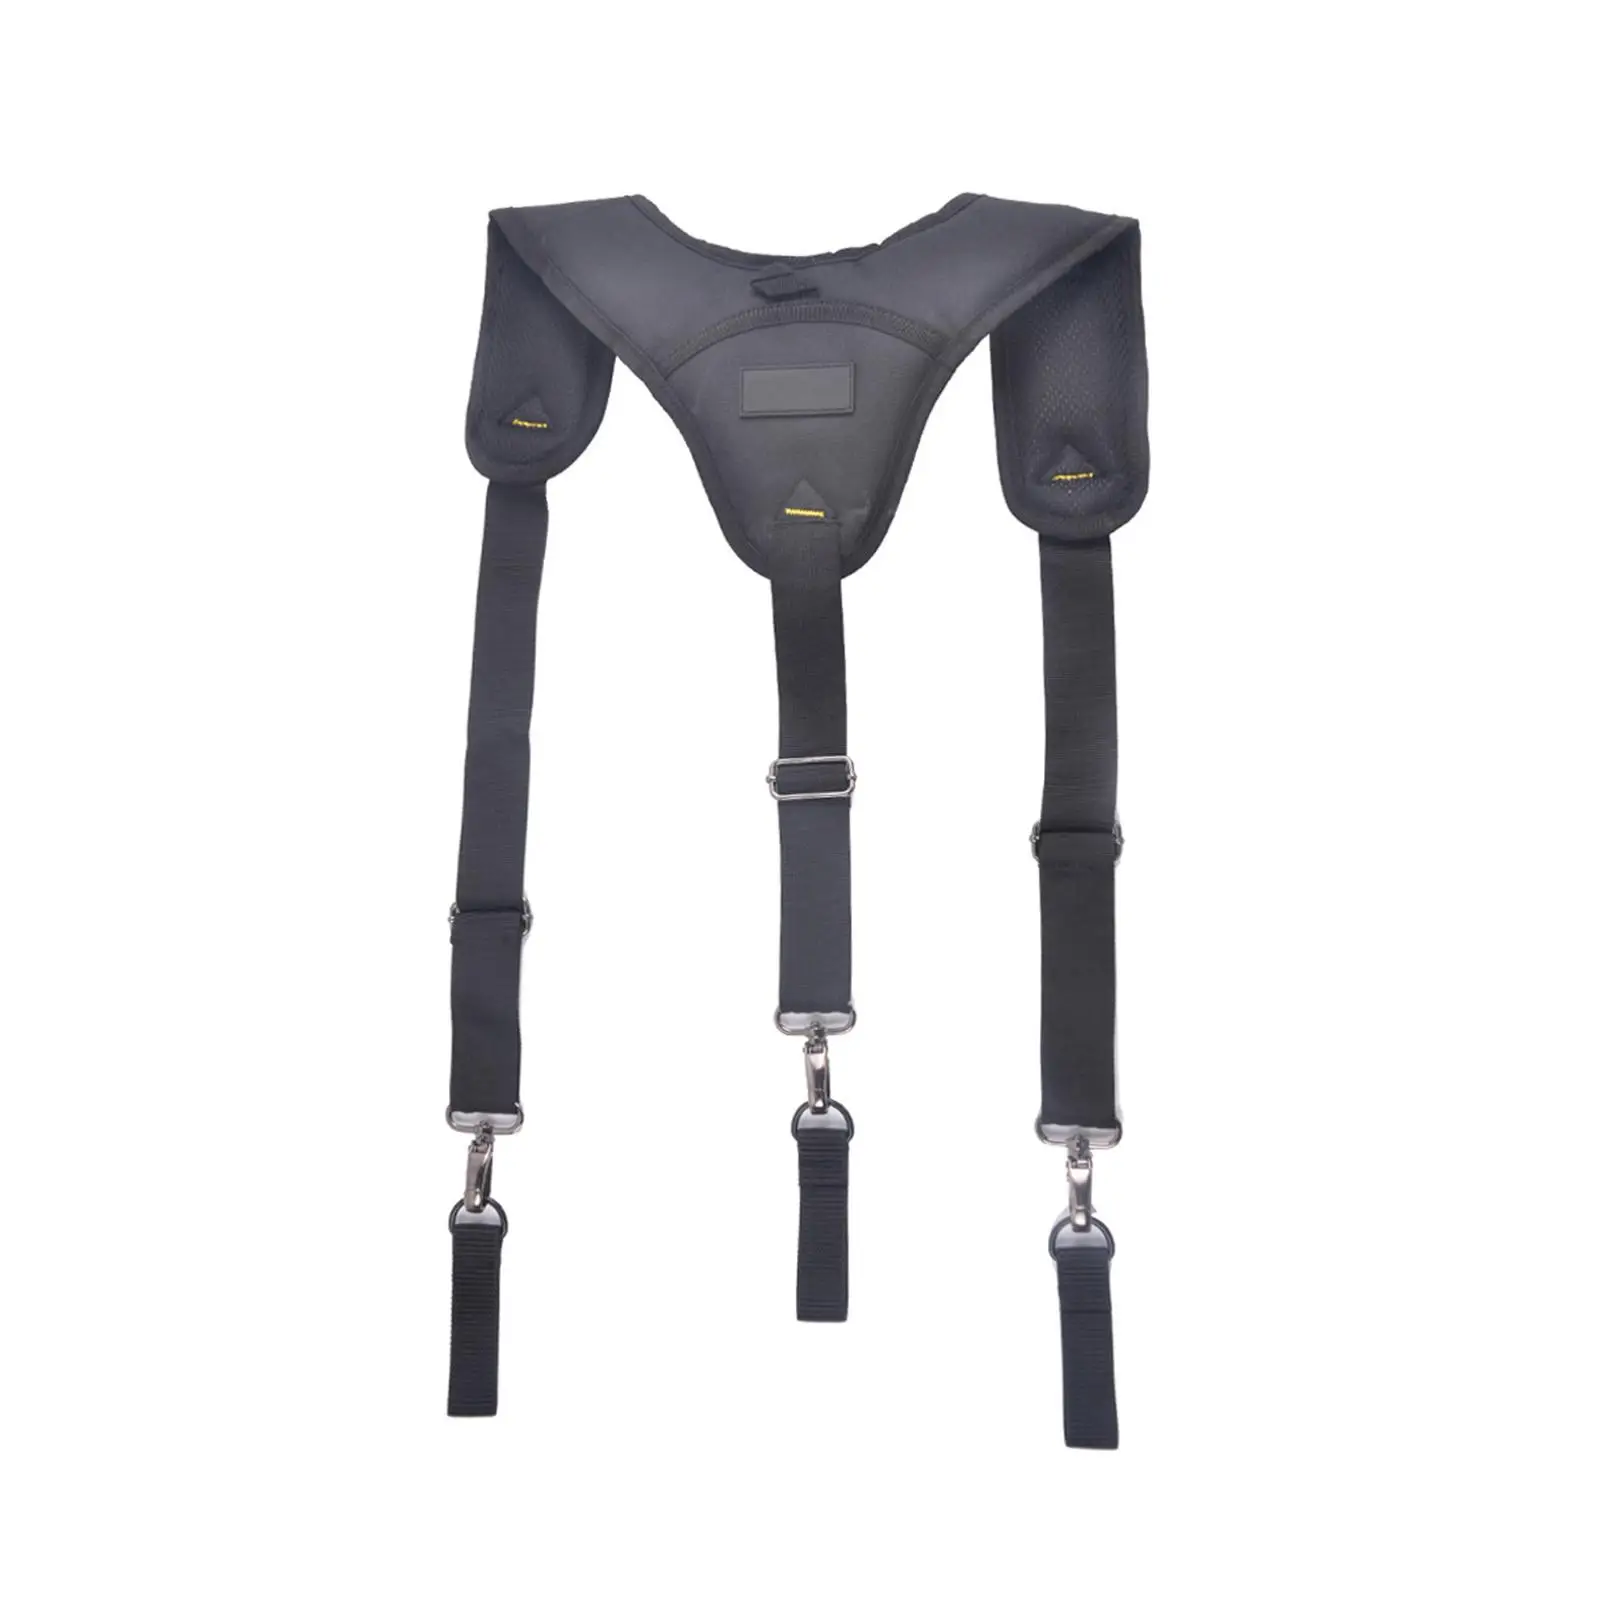 Tool Belt Suspender Men Framers Adjustable Shoulder Straps Work Suspenders